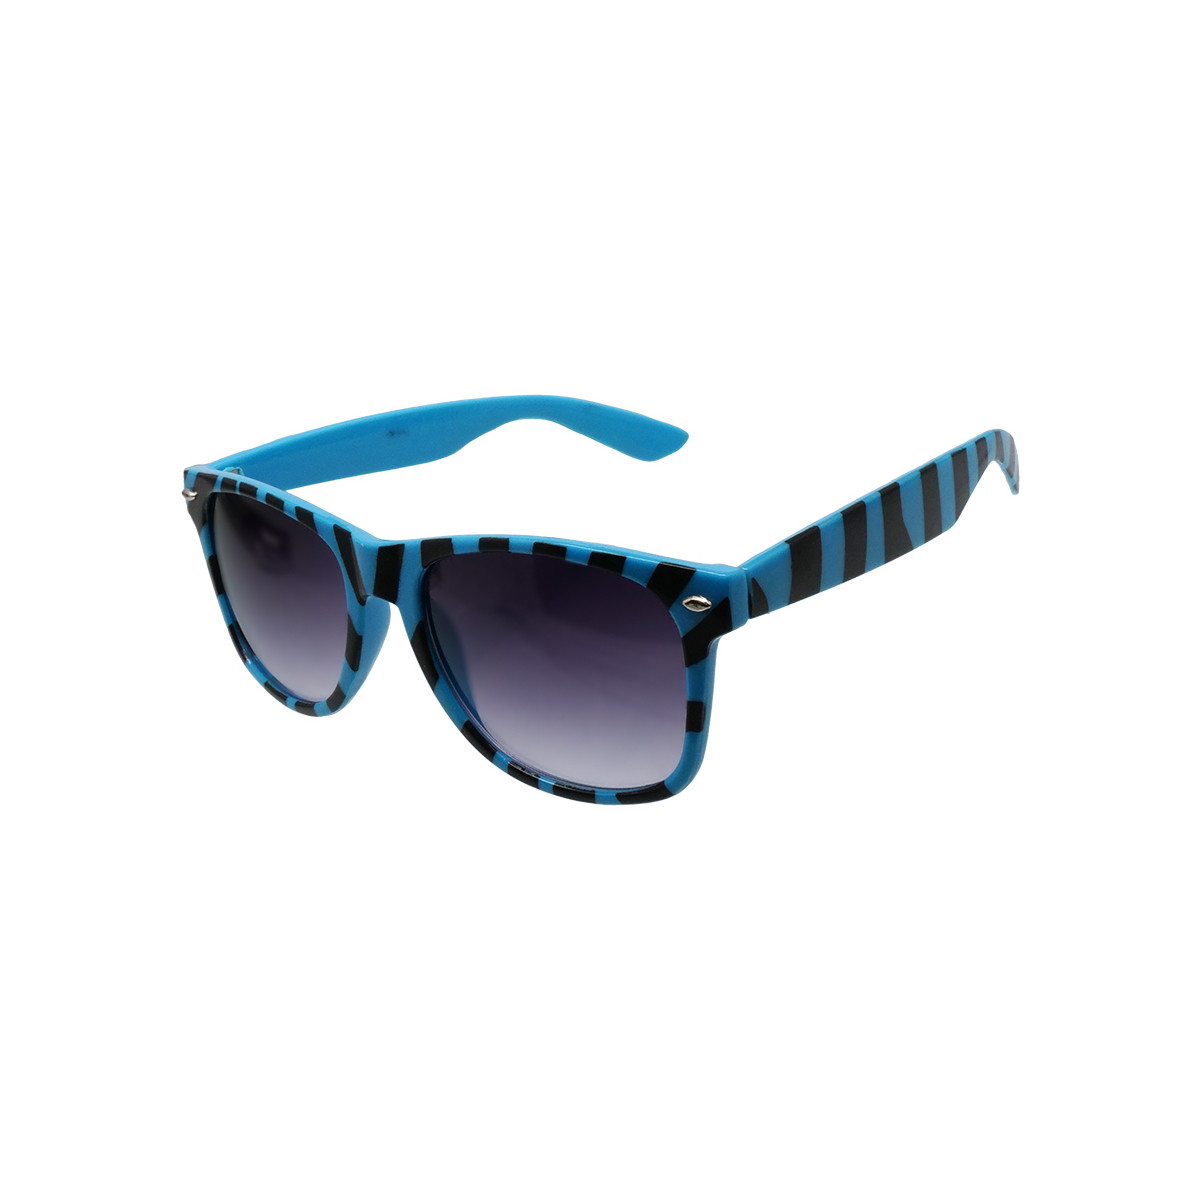 Hodinky & Bižuterie sluneční brýle Oem Sluneční brýle Nerd zebra modrá Světle modrá